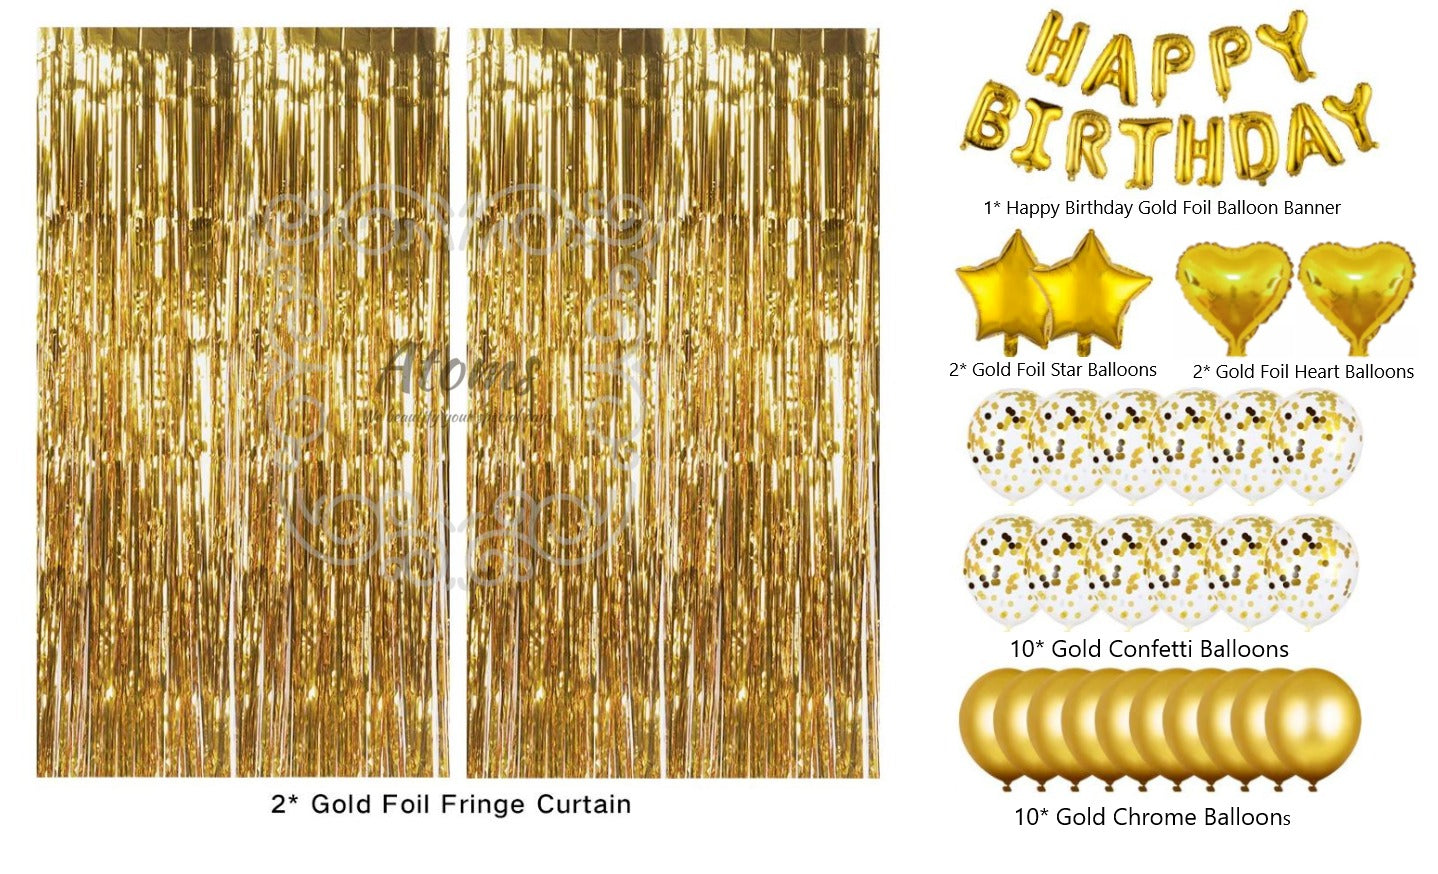 Gold Birthday Set